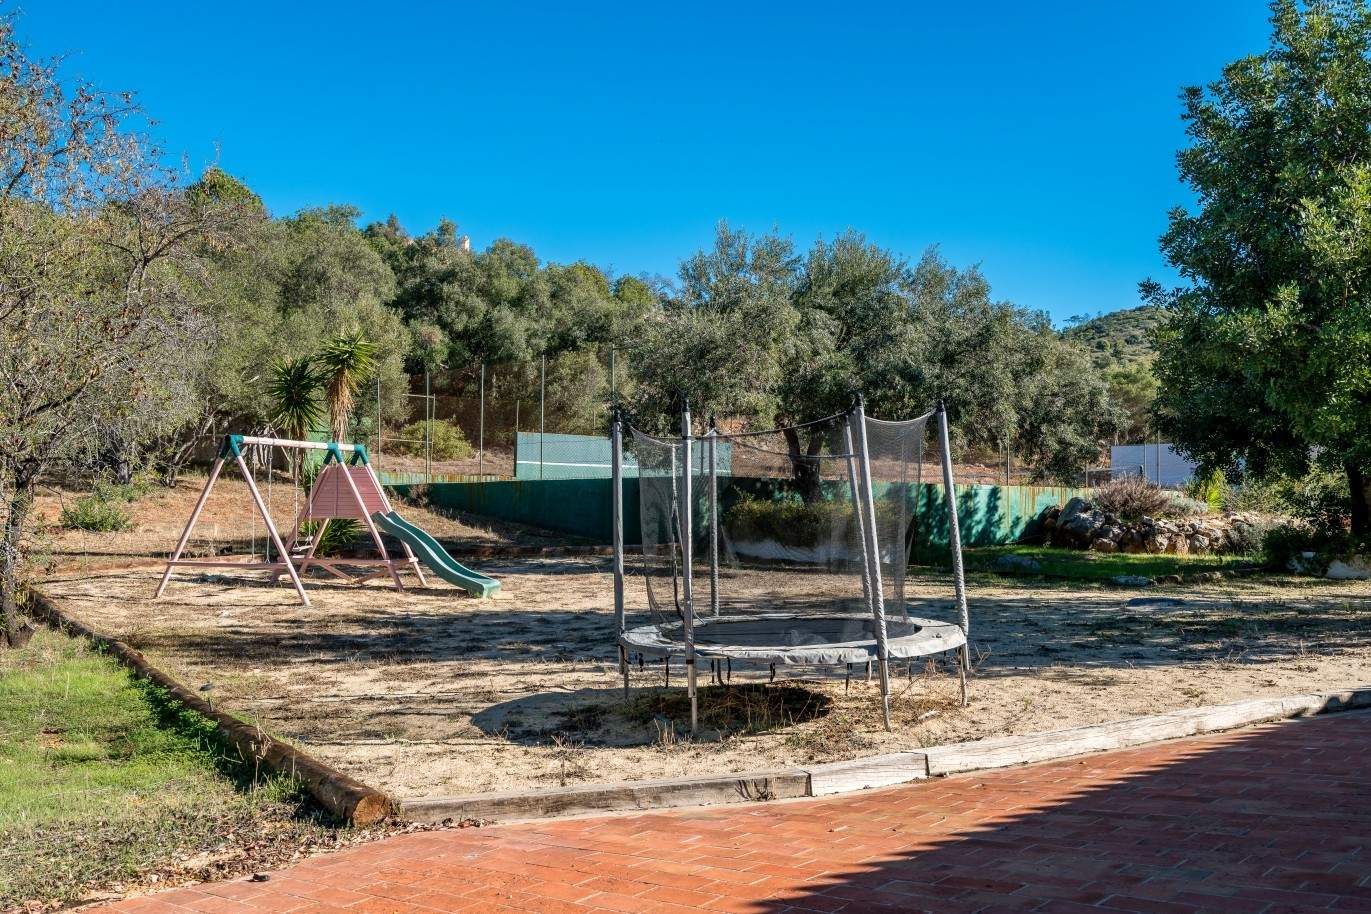 Piso en venta, piscina y tenis, Sta Bárbara de Nexe, Algarve, Portugal_70541